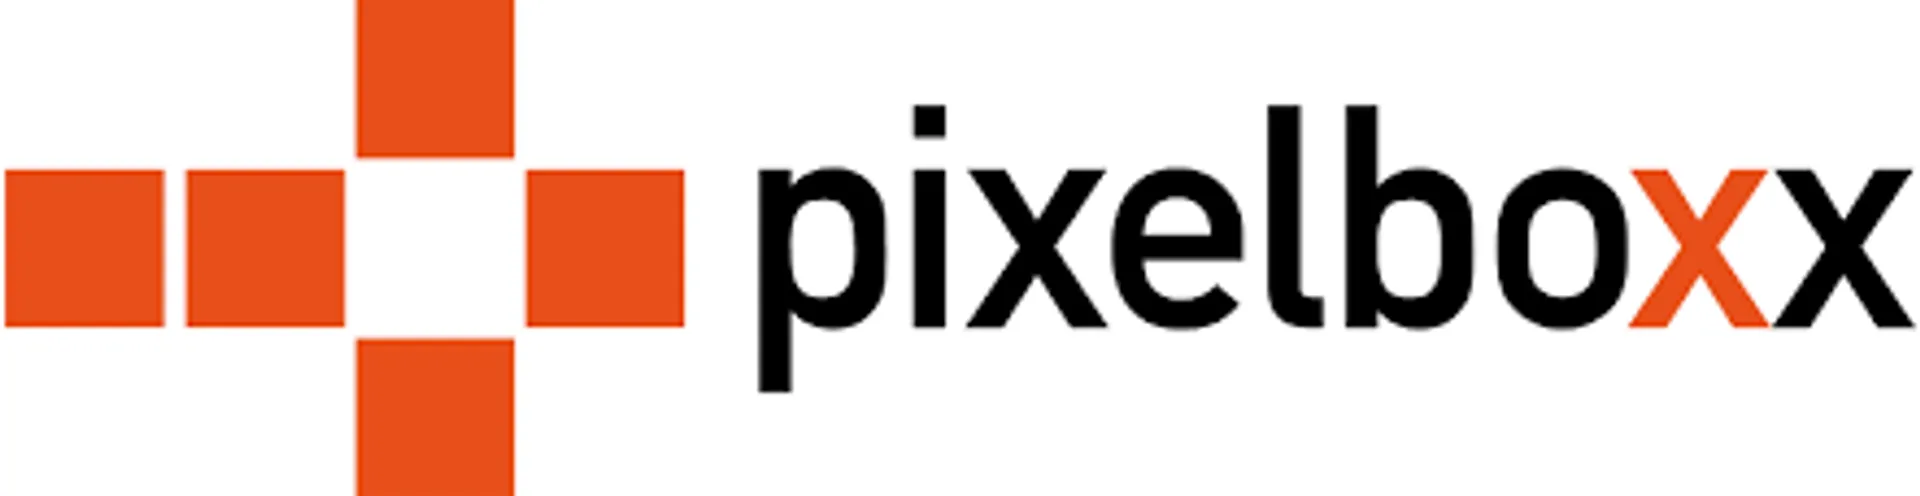 Pixelboxx